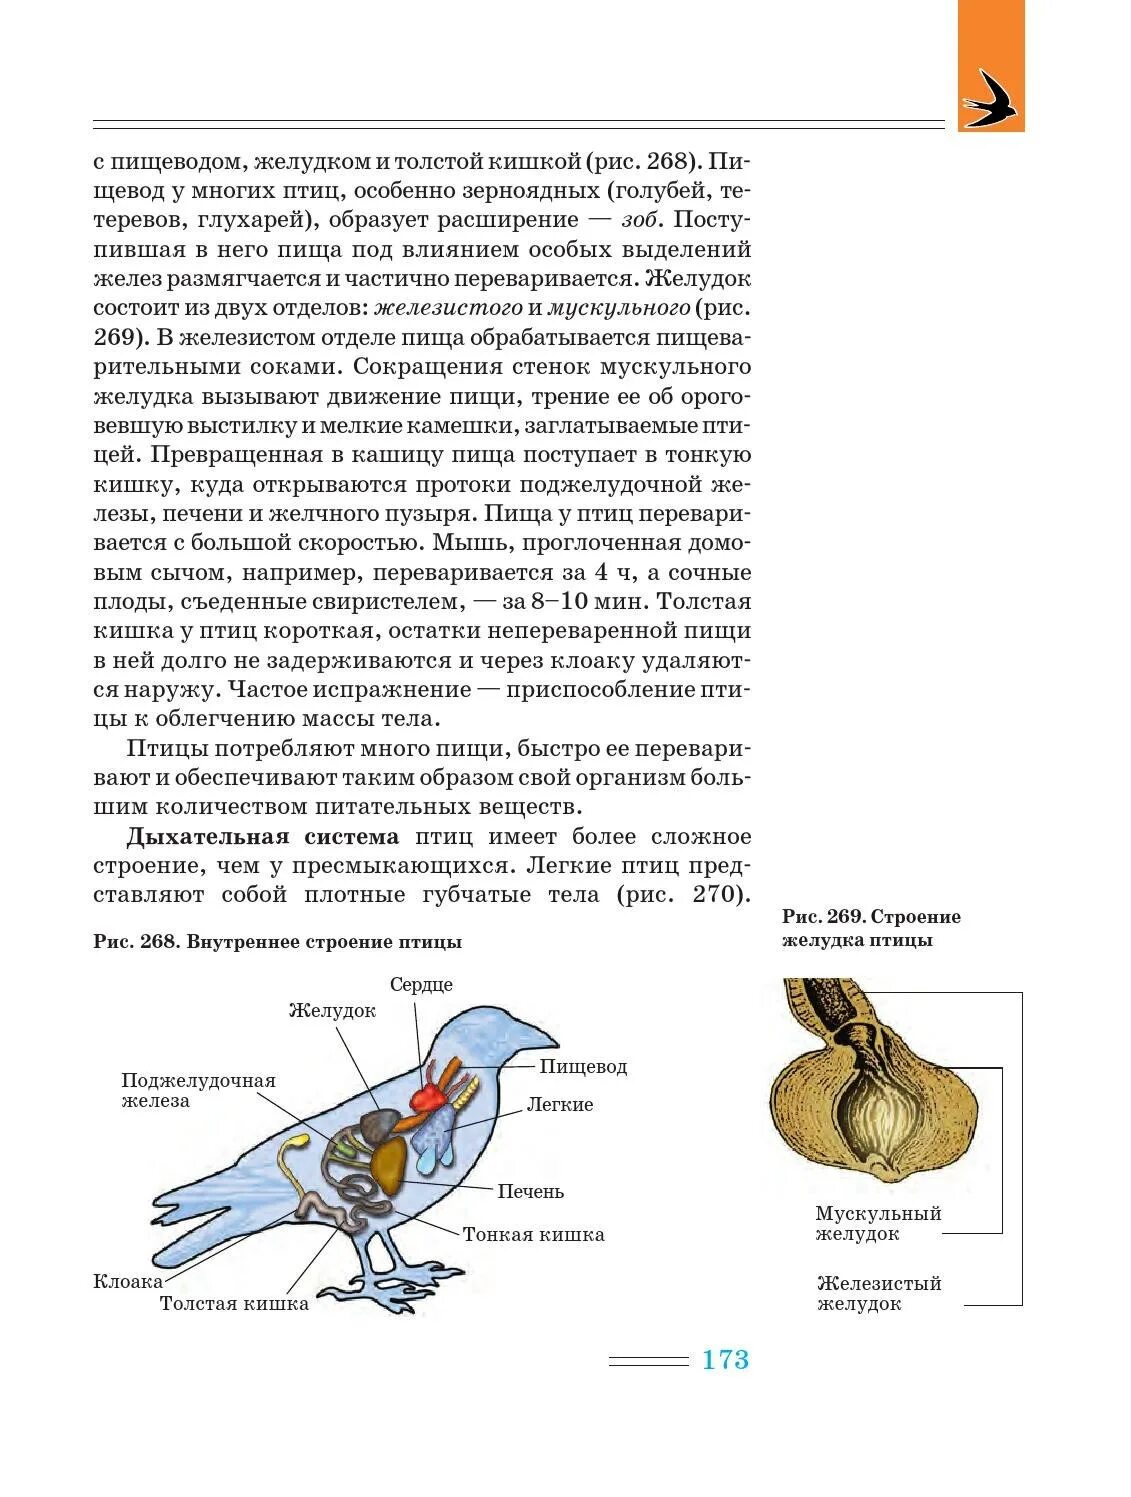 Зоб птицы анатомия. Пищеварительная система курицы анатомия. Строение пищеварительной системы птиц. Толстый кишечник птиц.